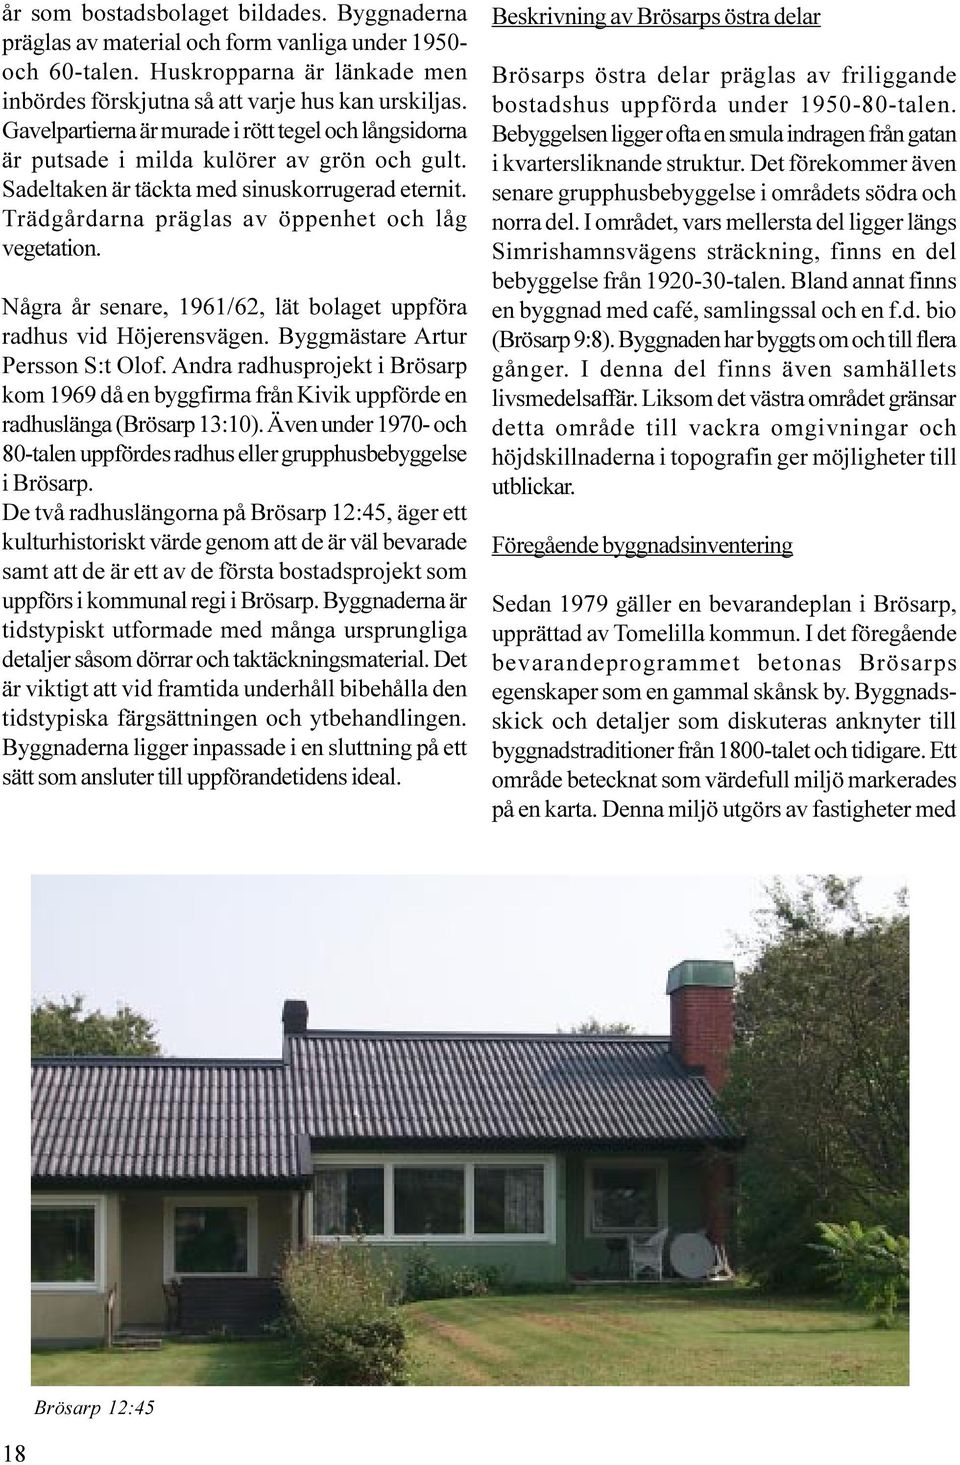 Trädgårdarna präglas av öppenhet och låg vegetation. Några år senare, 1961/62, lät bolaget uppföra radhus vid Höjerensvägen. Byggmästare Artur Persson S:t Olof.